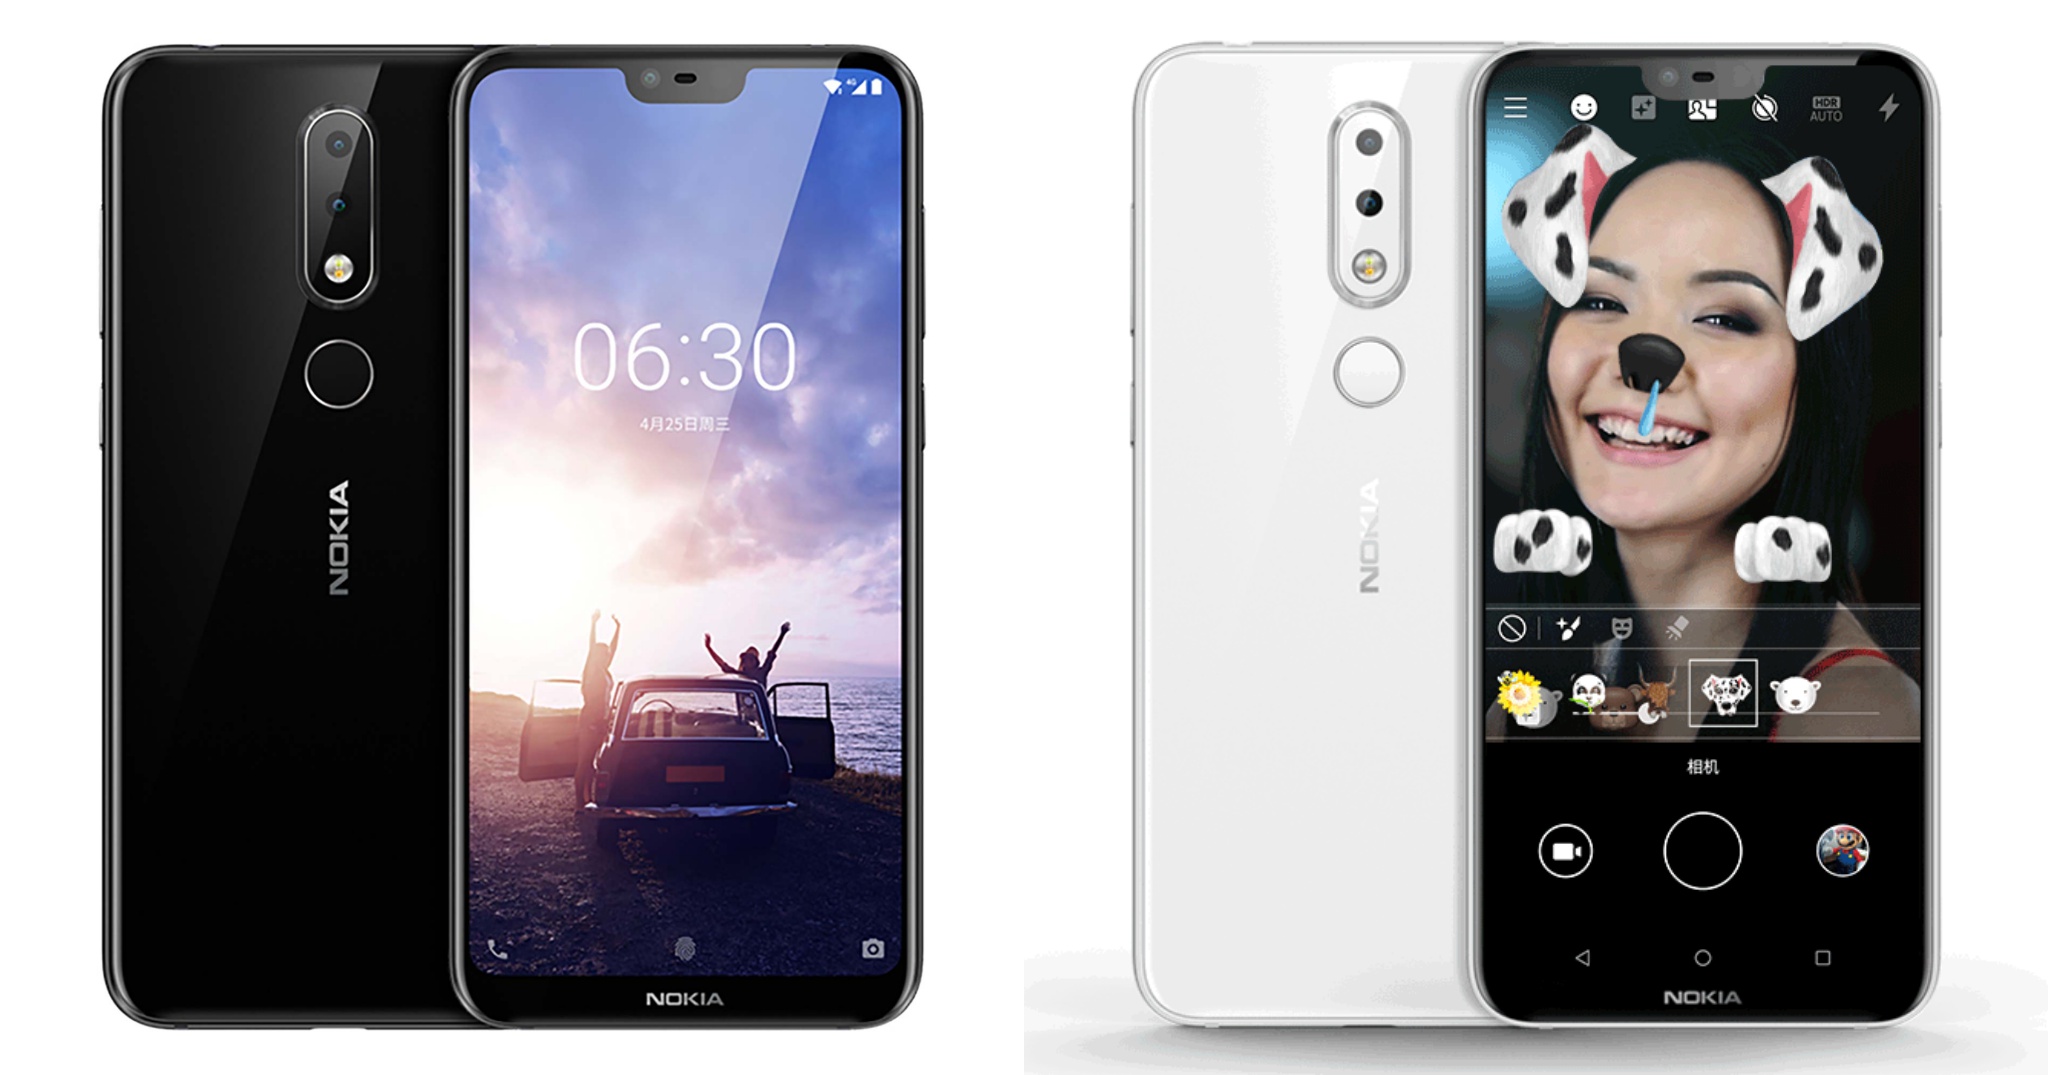 Nokia X6 chính thức: giá 235USD, tai thỏ, camera kép có AI, Snapdragon 636, pin 3060mAh có sạc nhanh